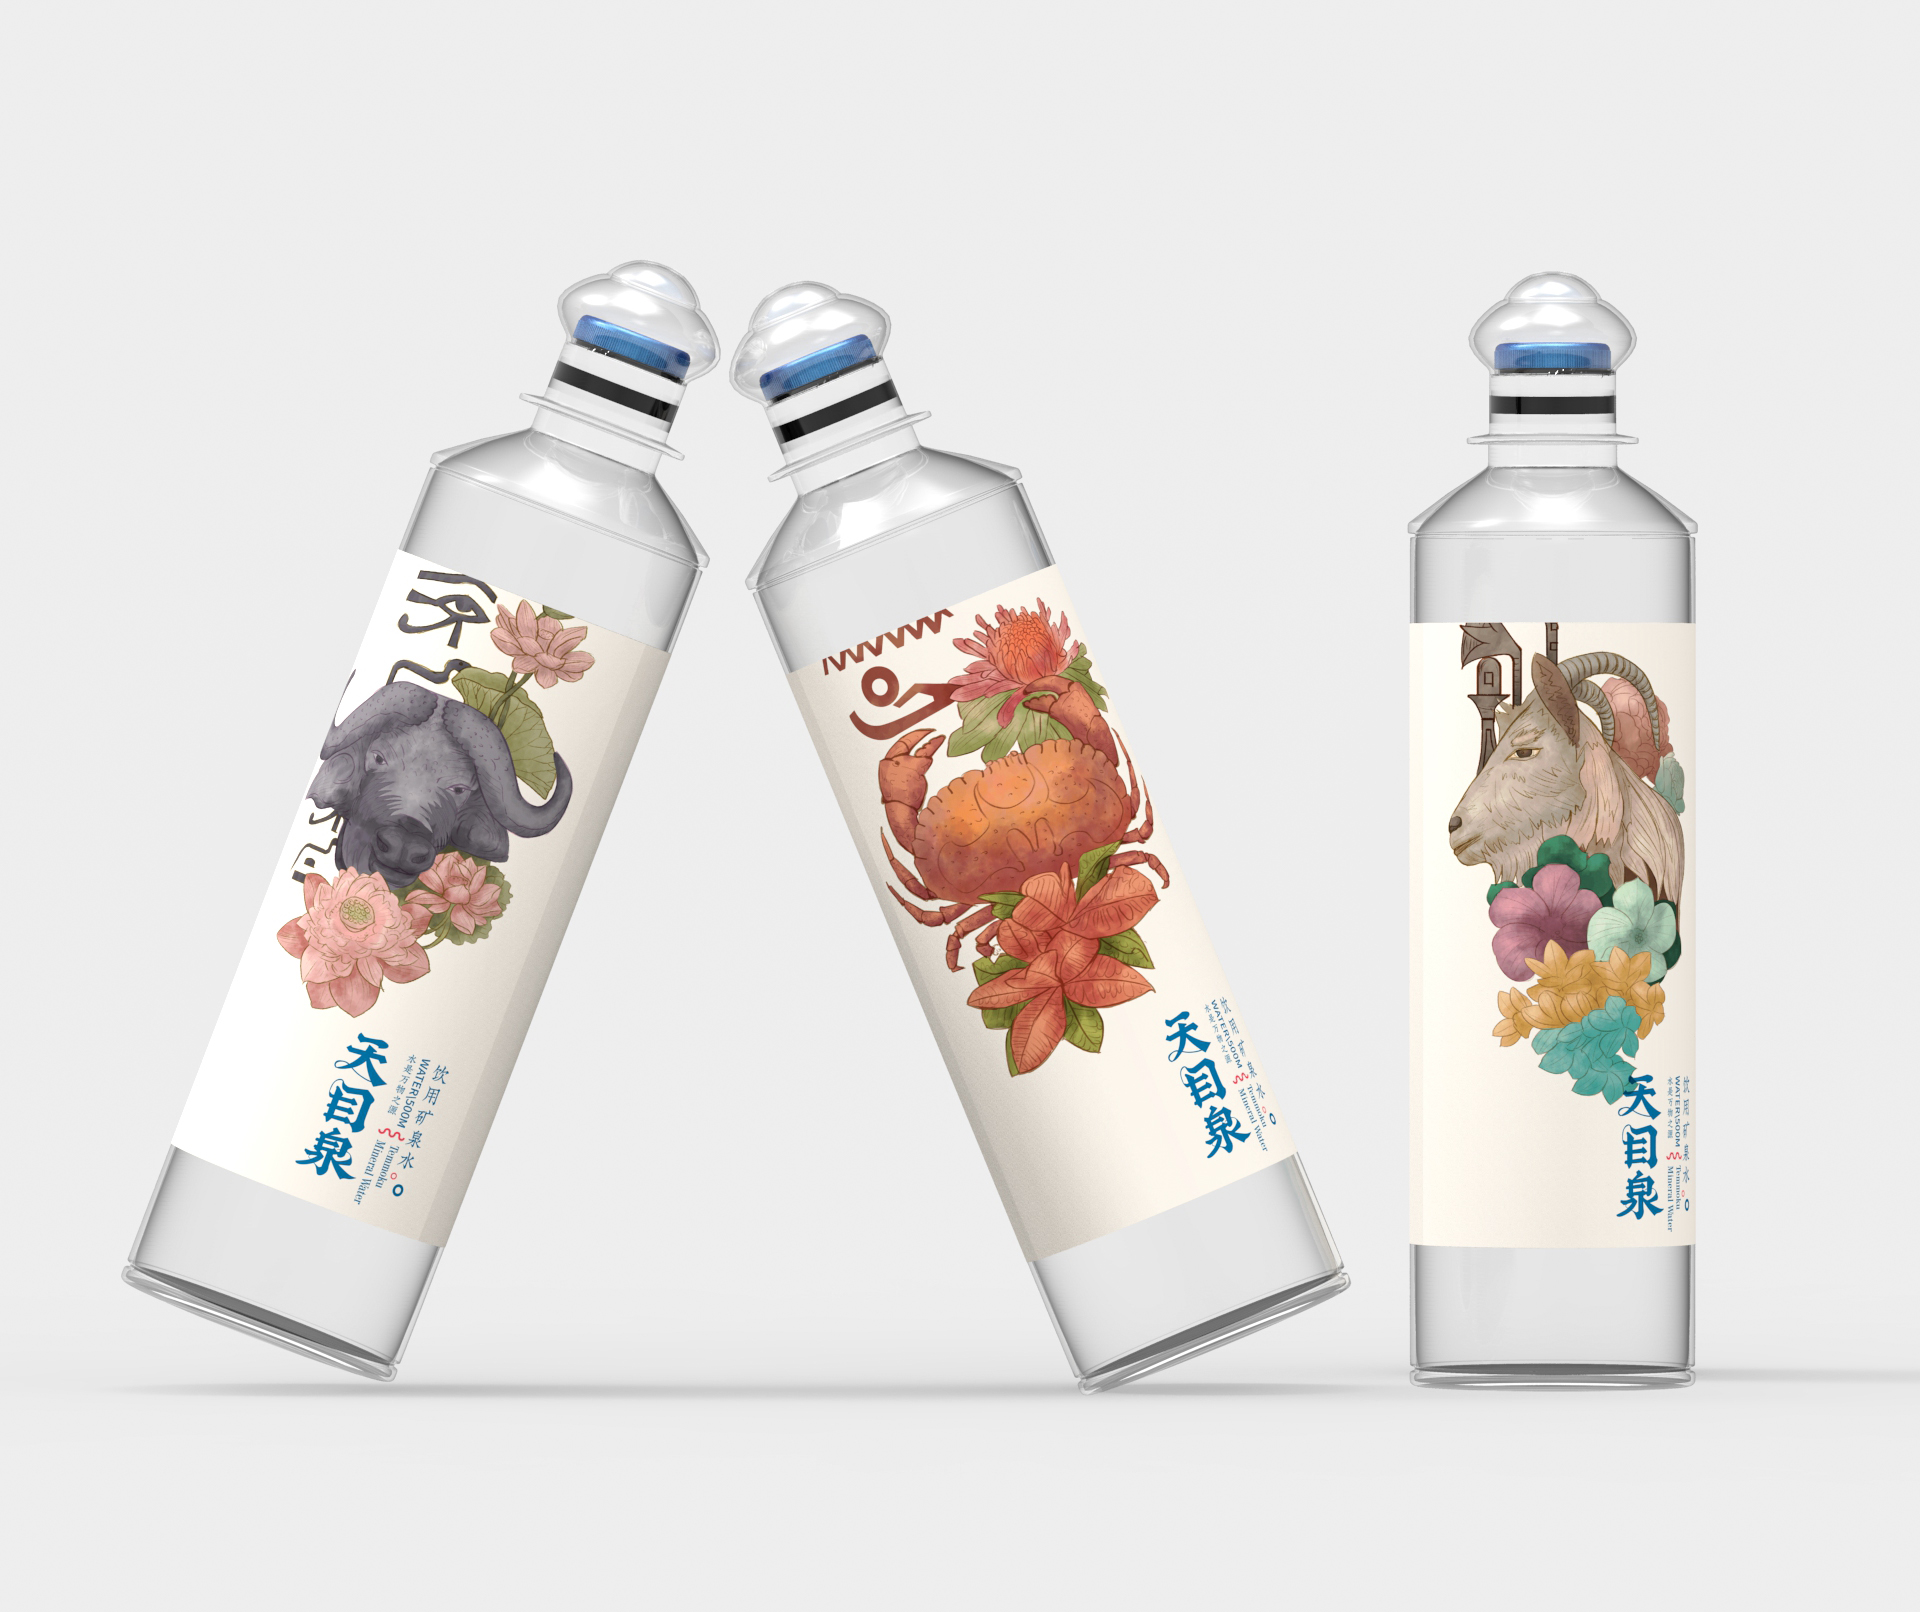 天目泉/饮用天然矿泉水/包装形象设计平面设计